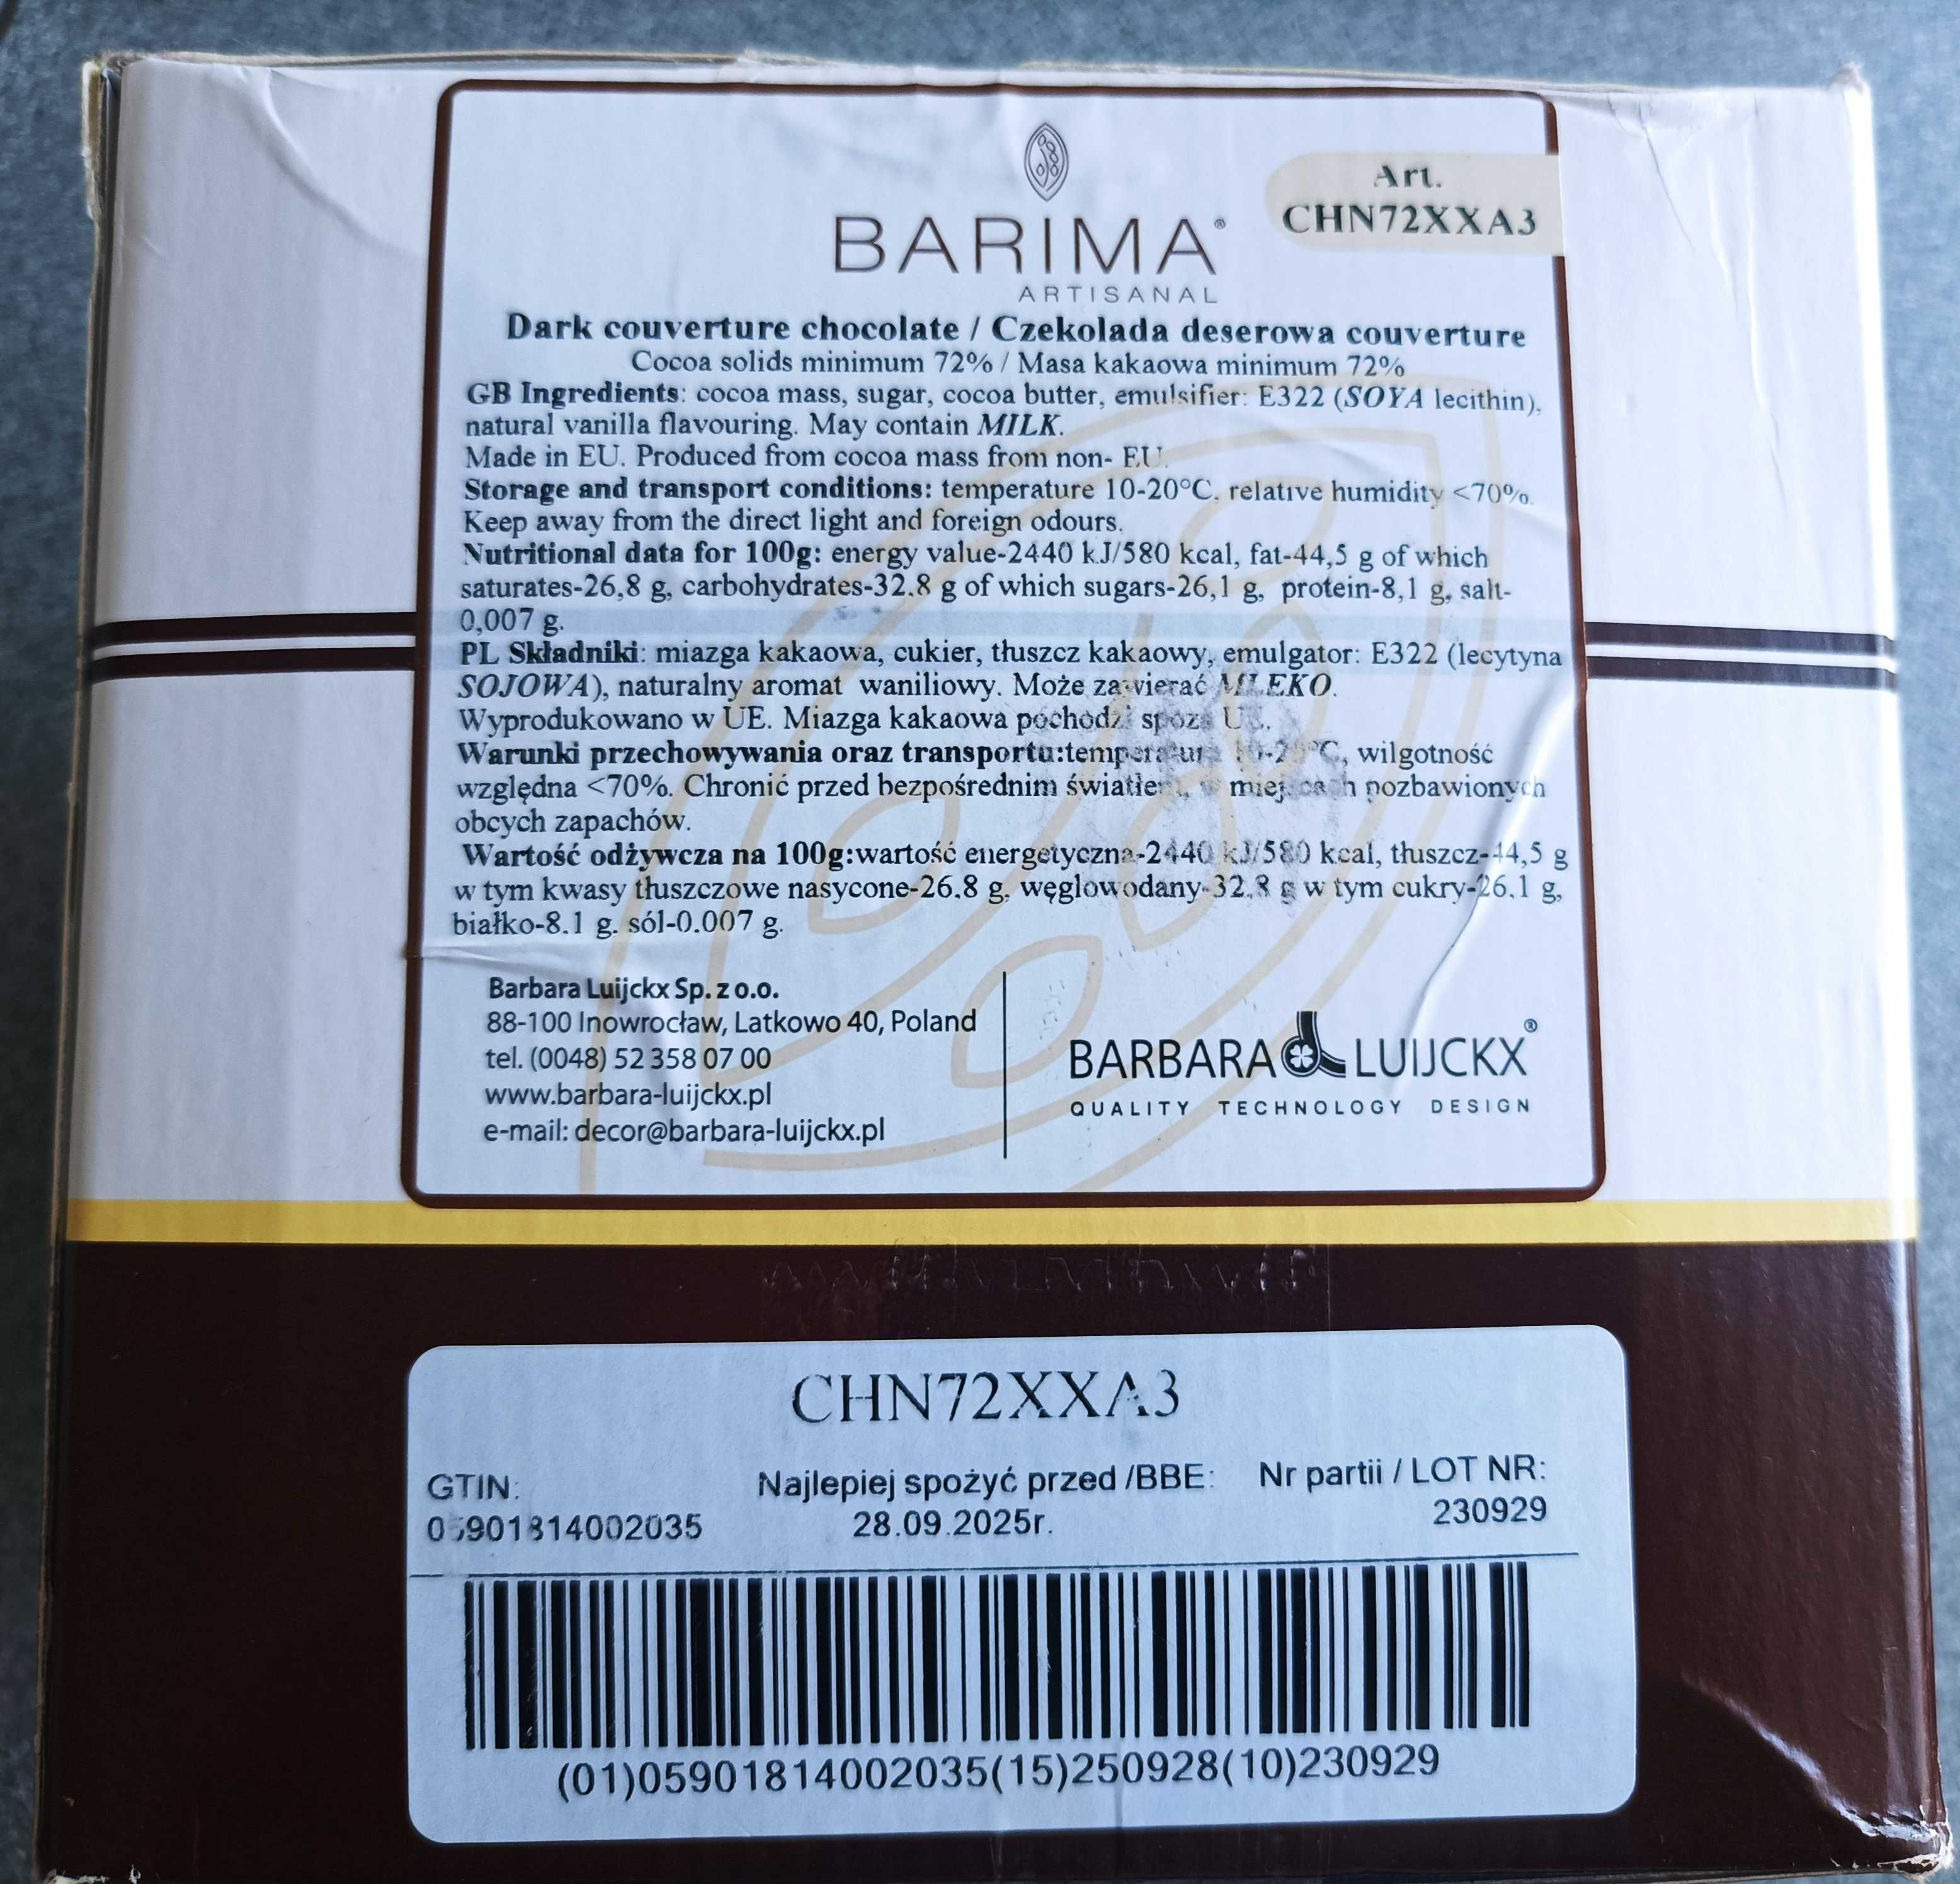 3 kg CZEKOLADA DESEROWA 72% CHN72XX3 BARIMA w postaci pastylek